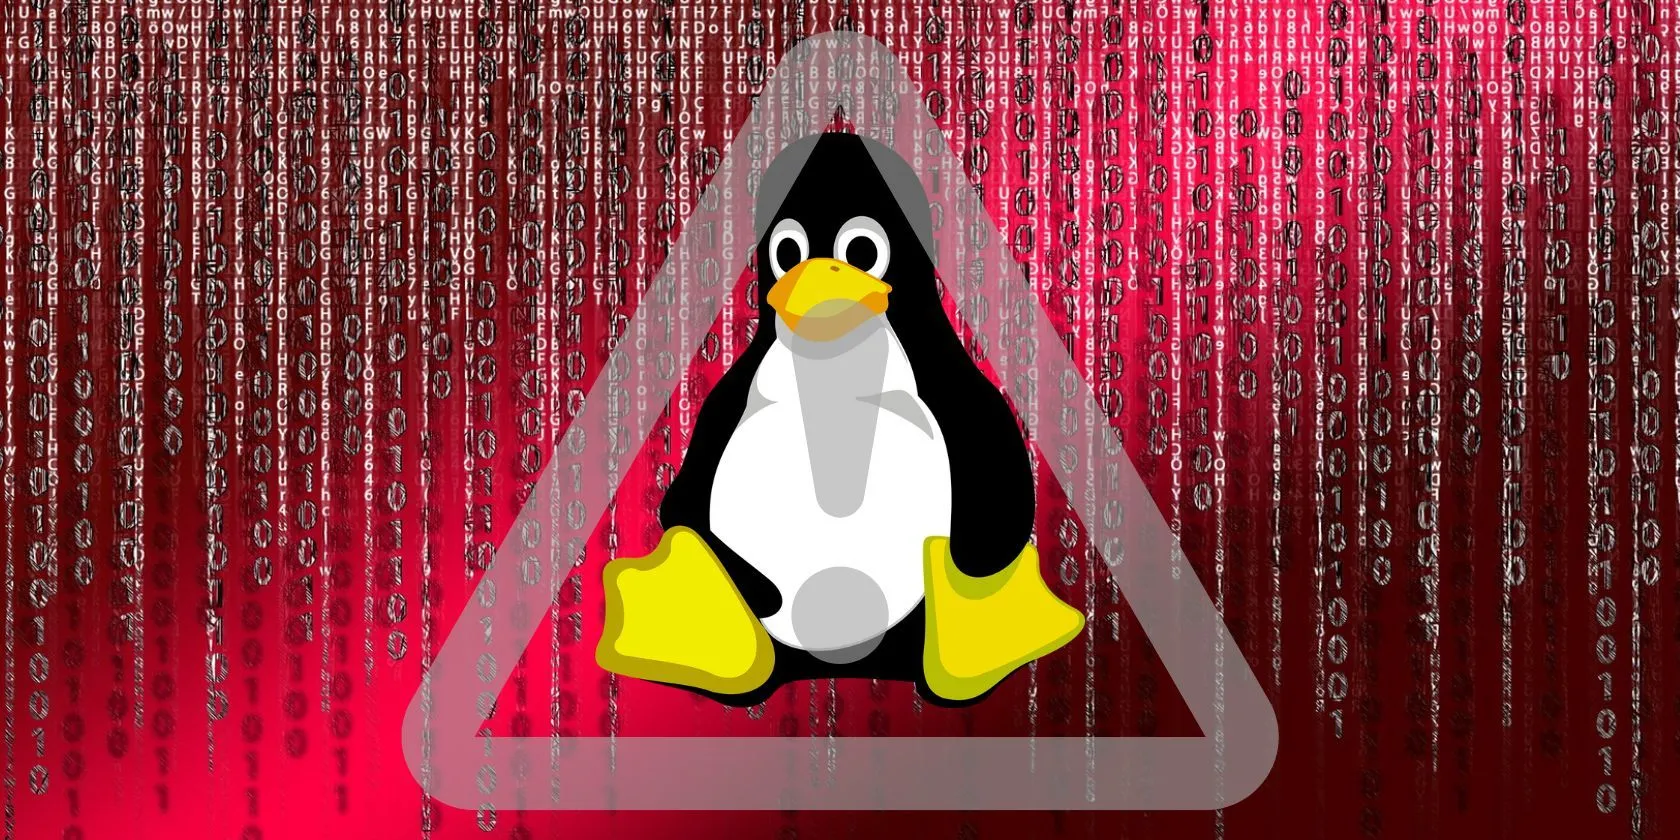 Bifrost truva atı yazılımı Linux’ta VMware etki alanını taklit ediyor!